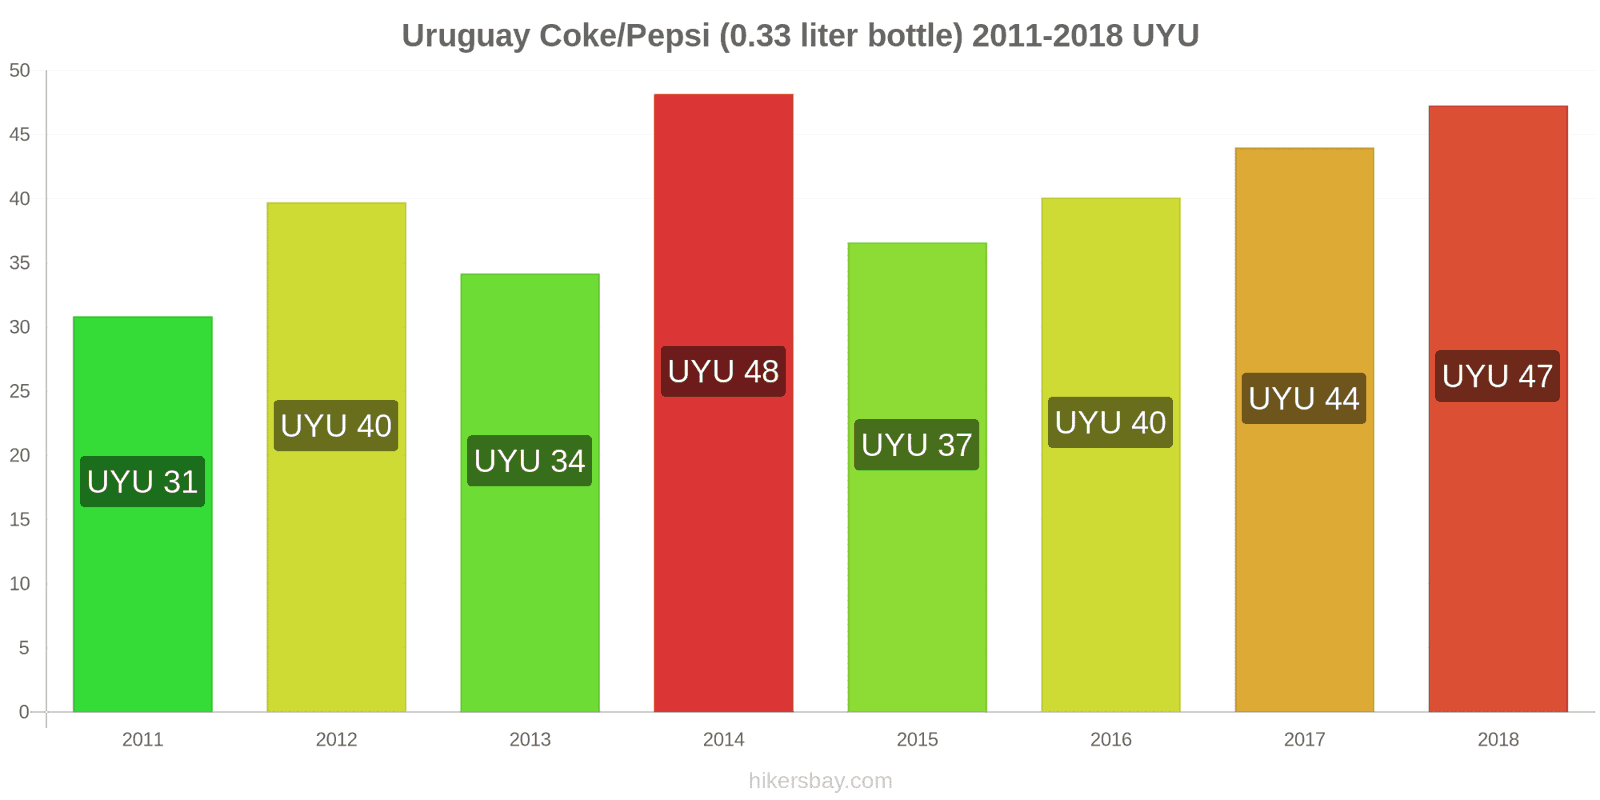 Uruguay price changes Coke/Pepsi (0.33 liter bottle) hikersbay.com